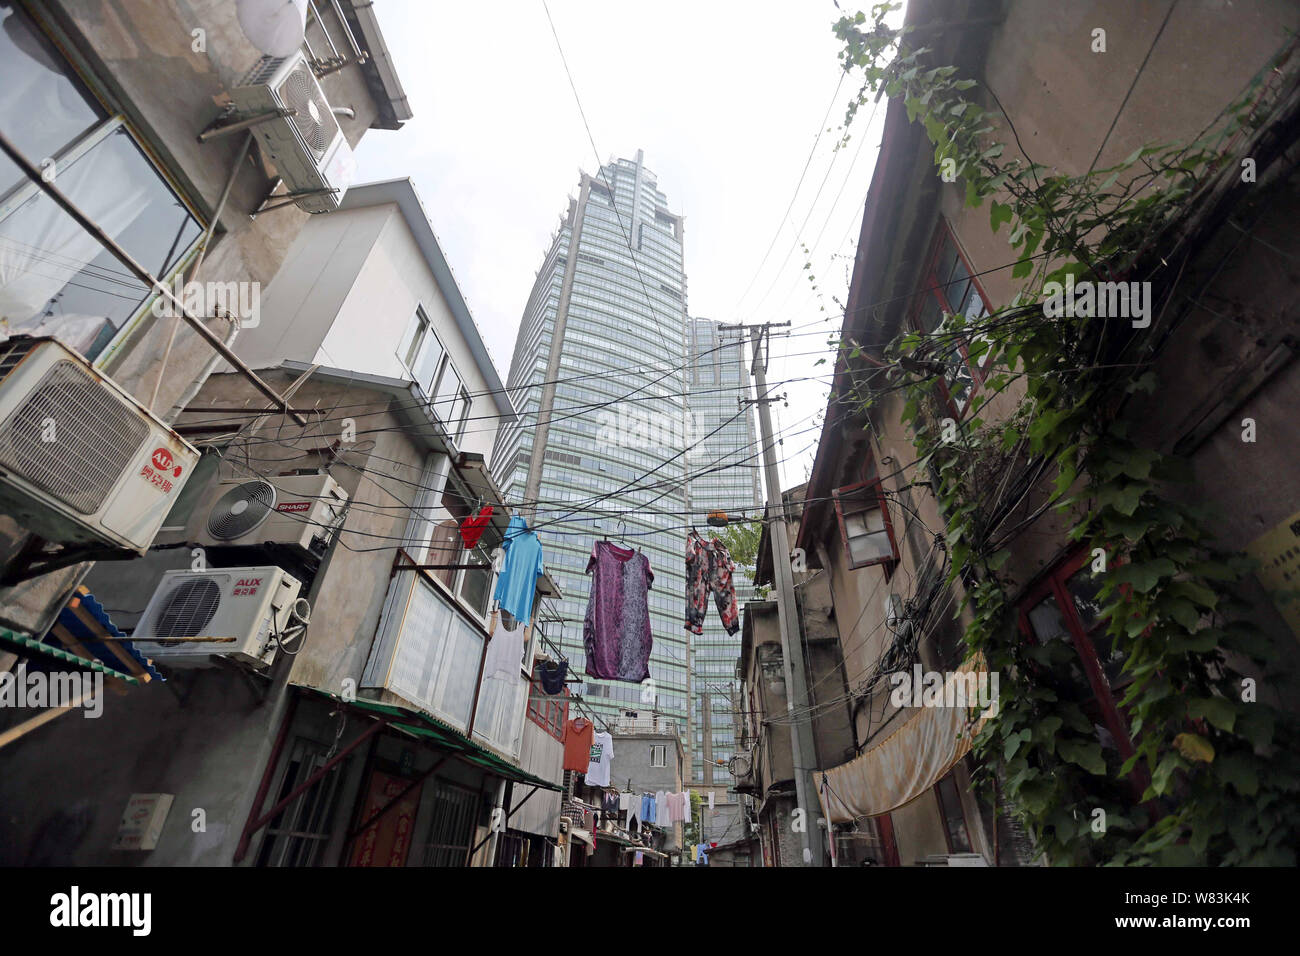 ------ Kleidung aufhängen an den Kabeln für die Trocknung über einen Weg zu einem Elendsviertel mit alten Häusern für den Wiederaufbau in Shanghai, China, 27 Ju demontiert werden Stockfoto